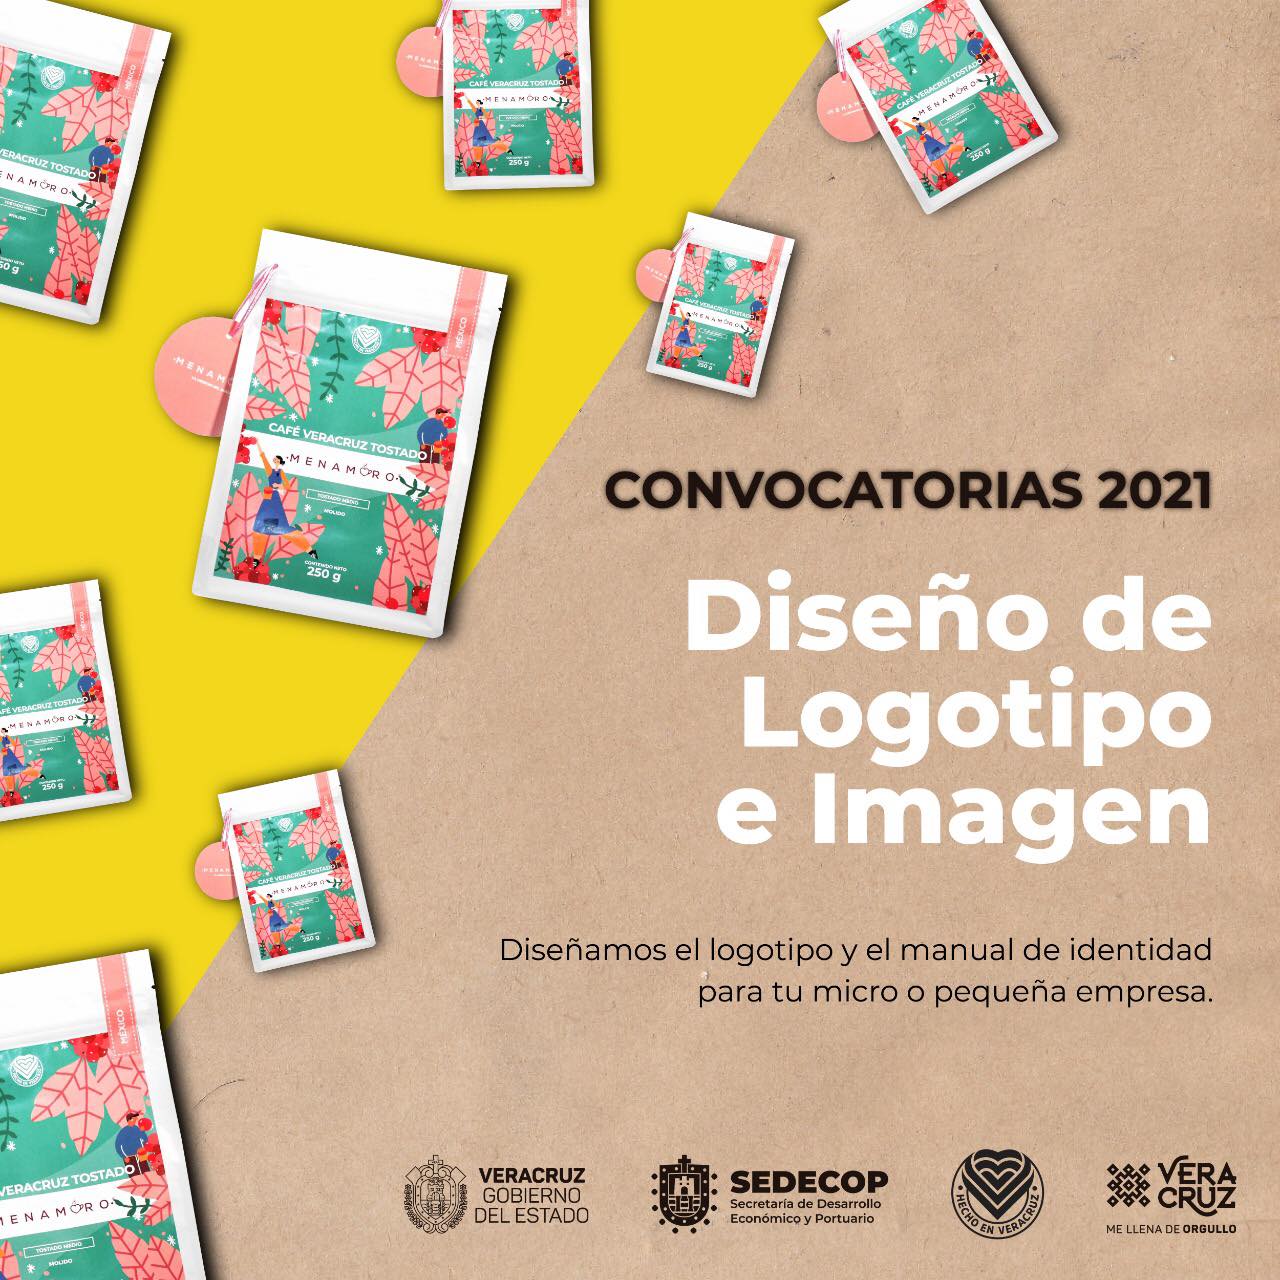 En Veracruz, lanzan convocatorias del programa “Listos para comercializar 2021”